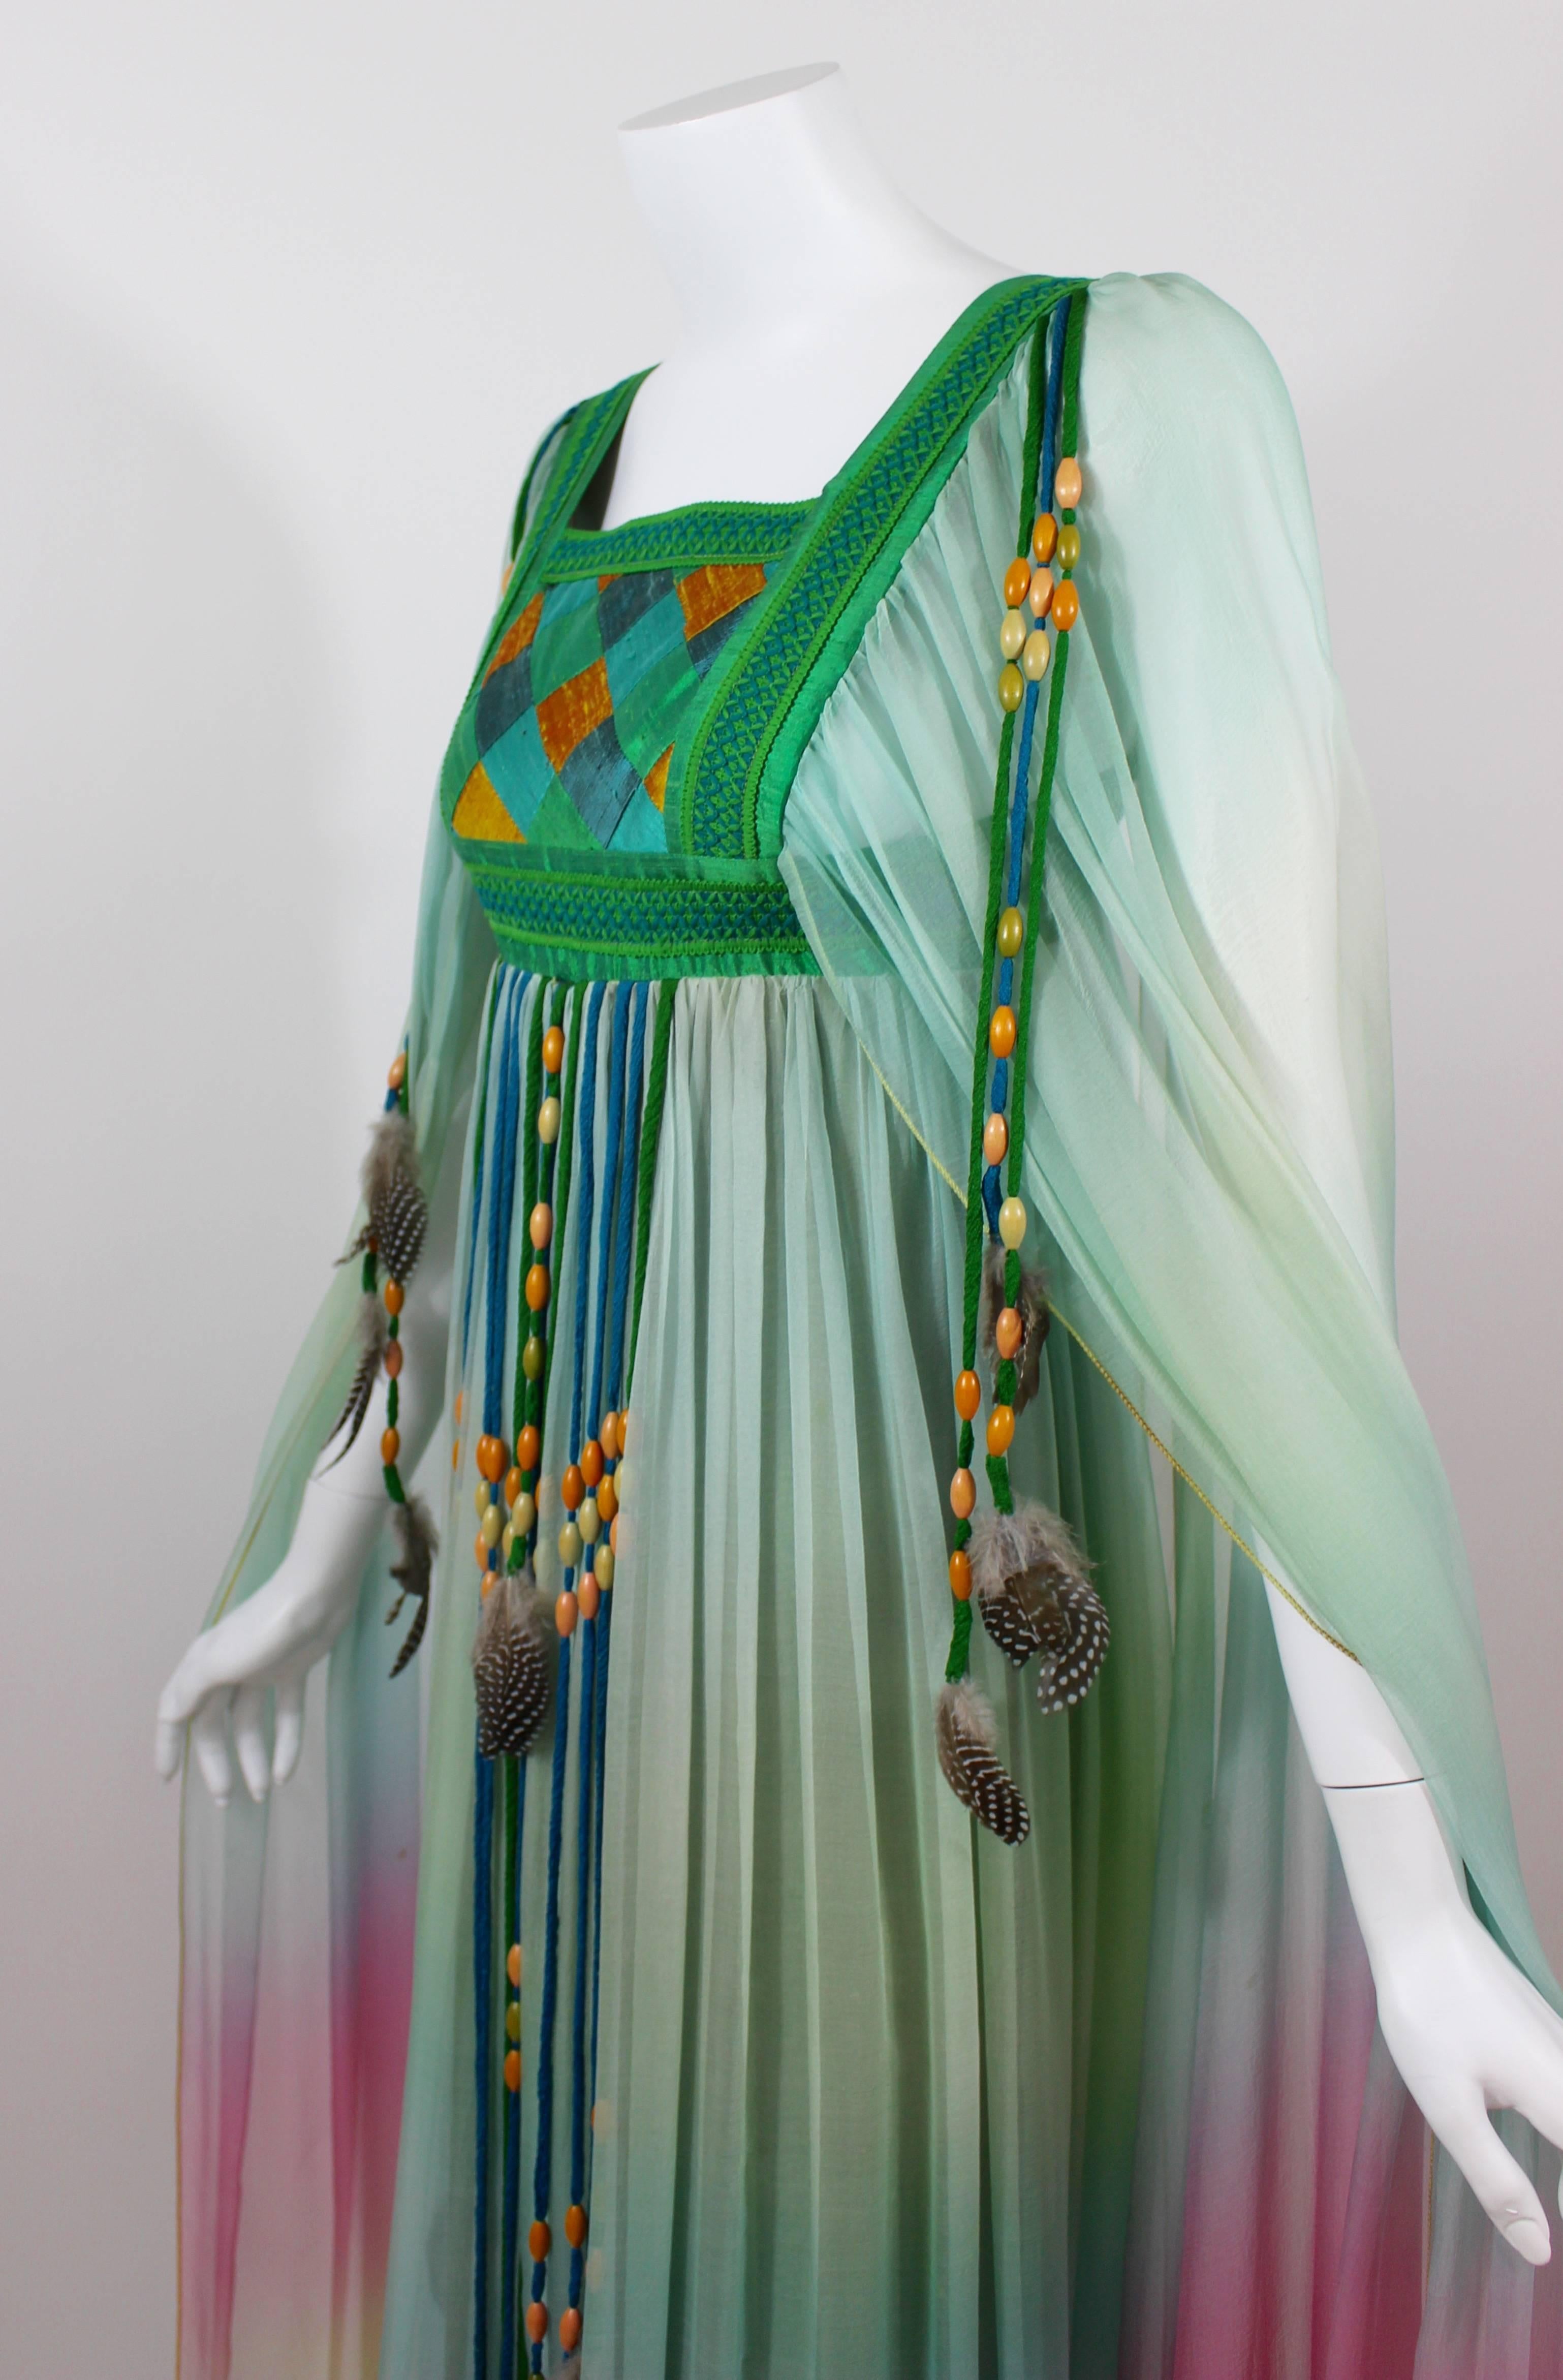  Robe de mariée en mousseline de soie dégradée Gina Fratini Elizabeth Taylor documentée 1975 Pour femmes 